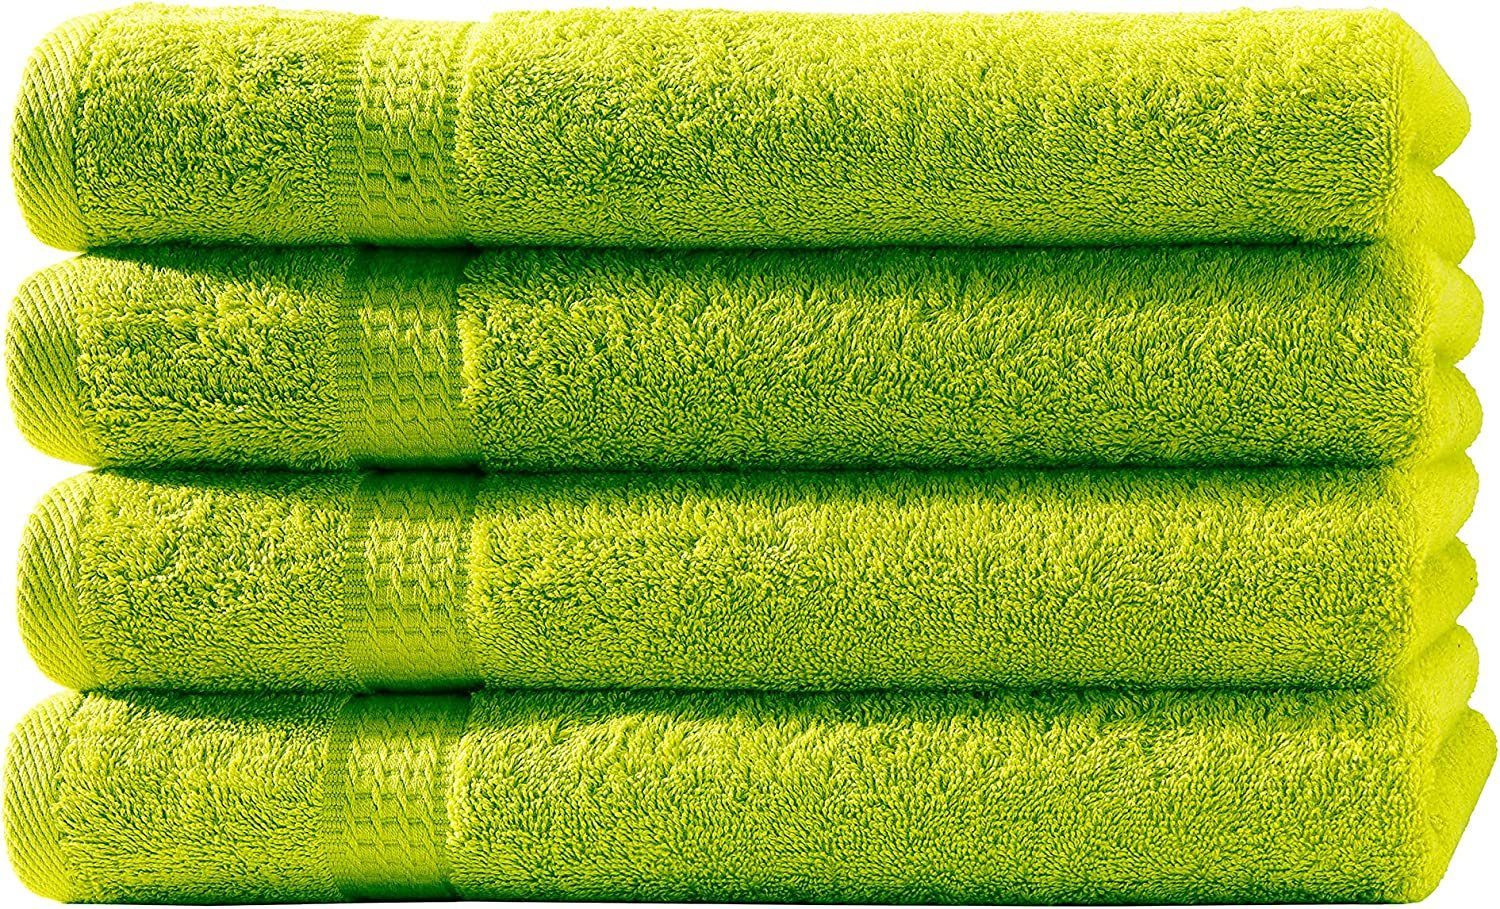 Uni Handtücher Baumwolle, Handtuch mit (1-St) 100% Frotteeware Baumwolle Bordüre Handtuchset, soma